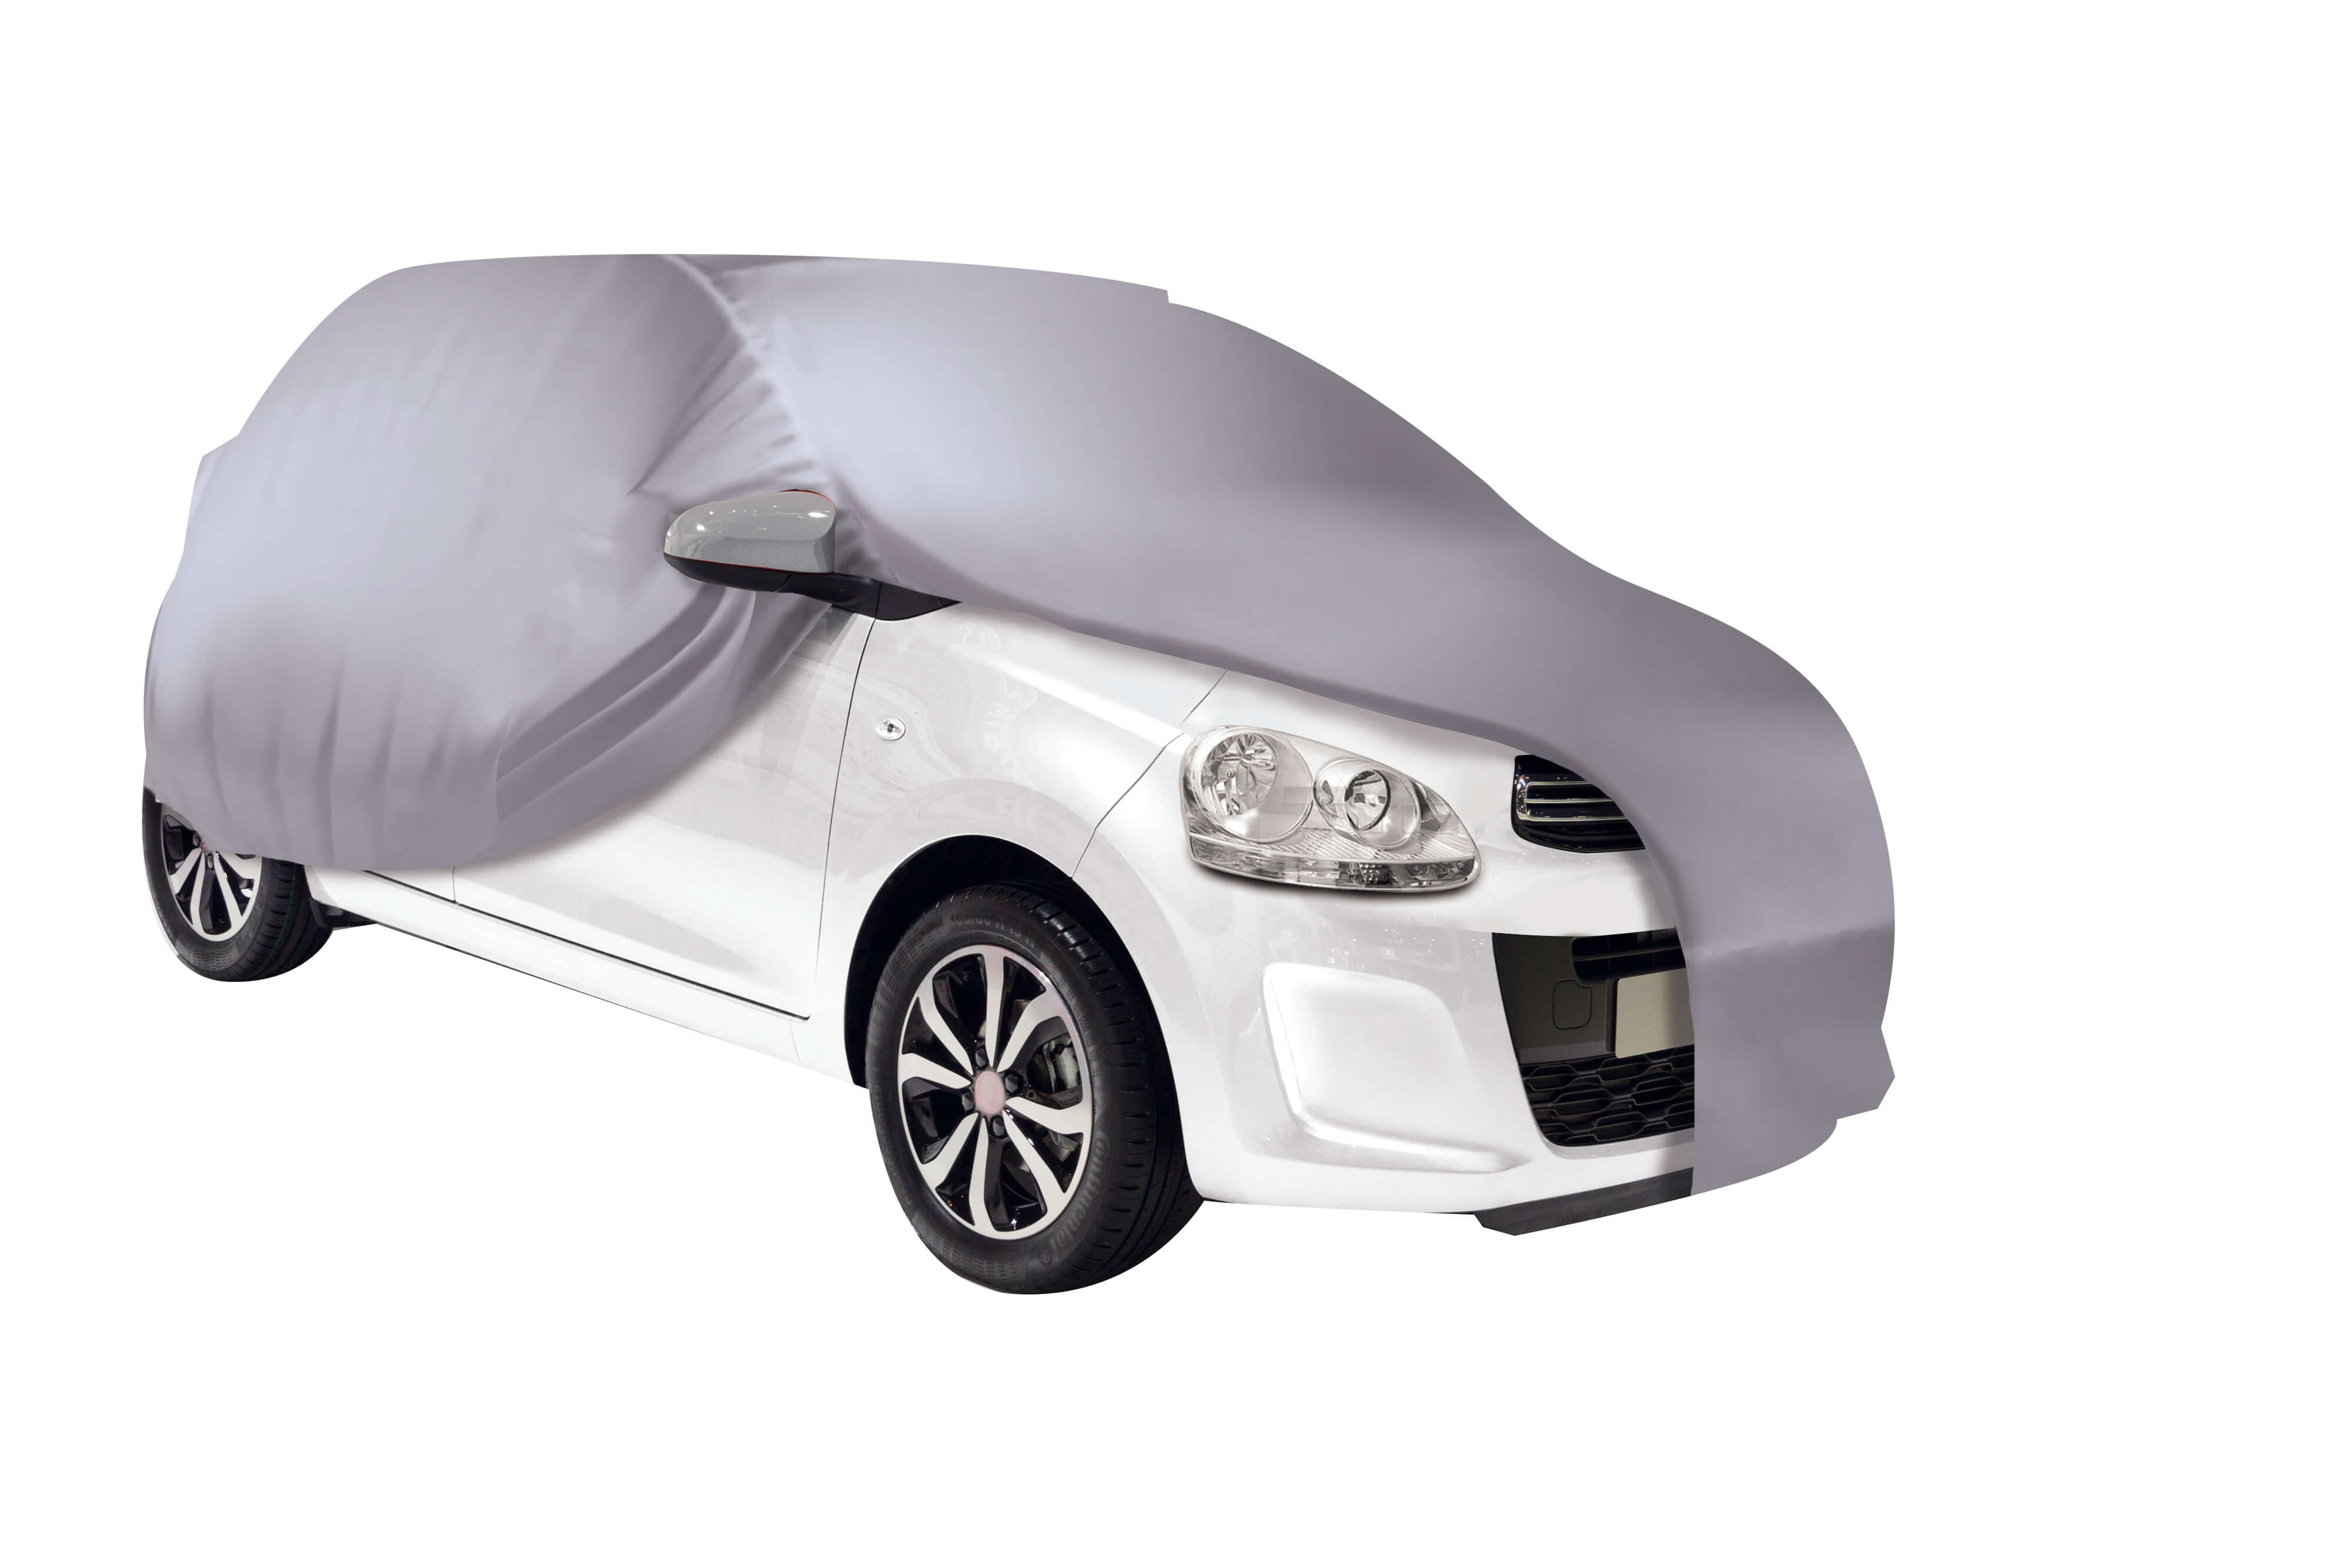 Housse protection carrosserie intérieur - Taille L